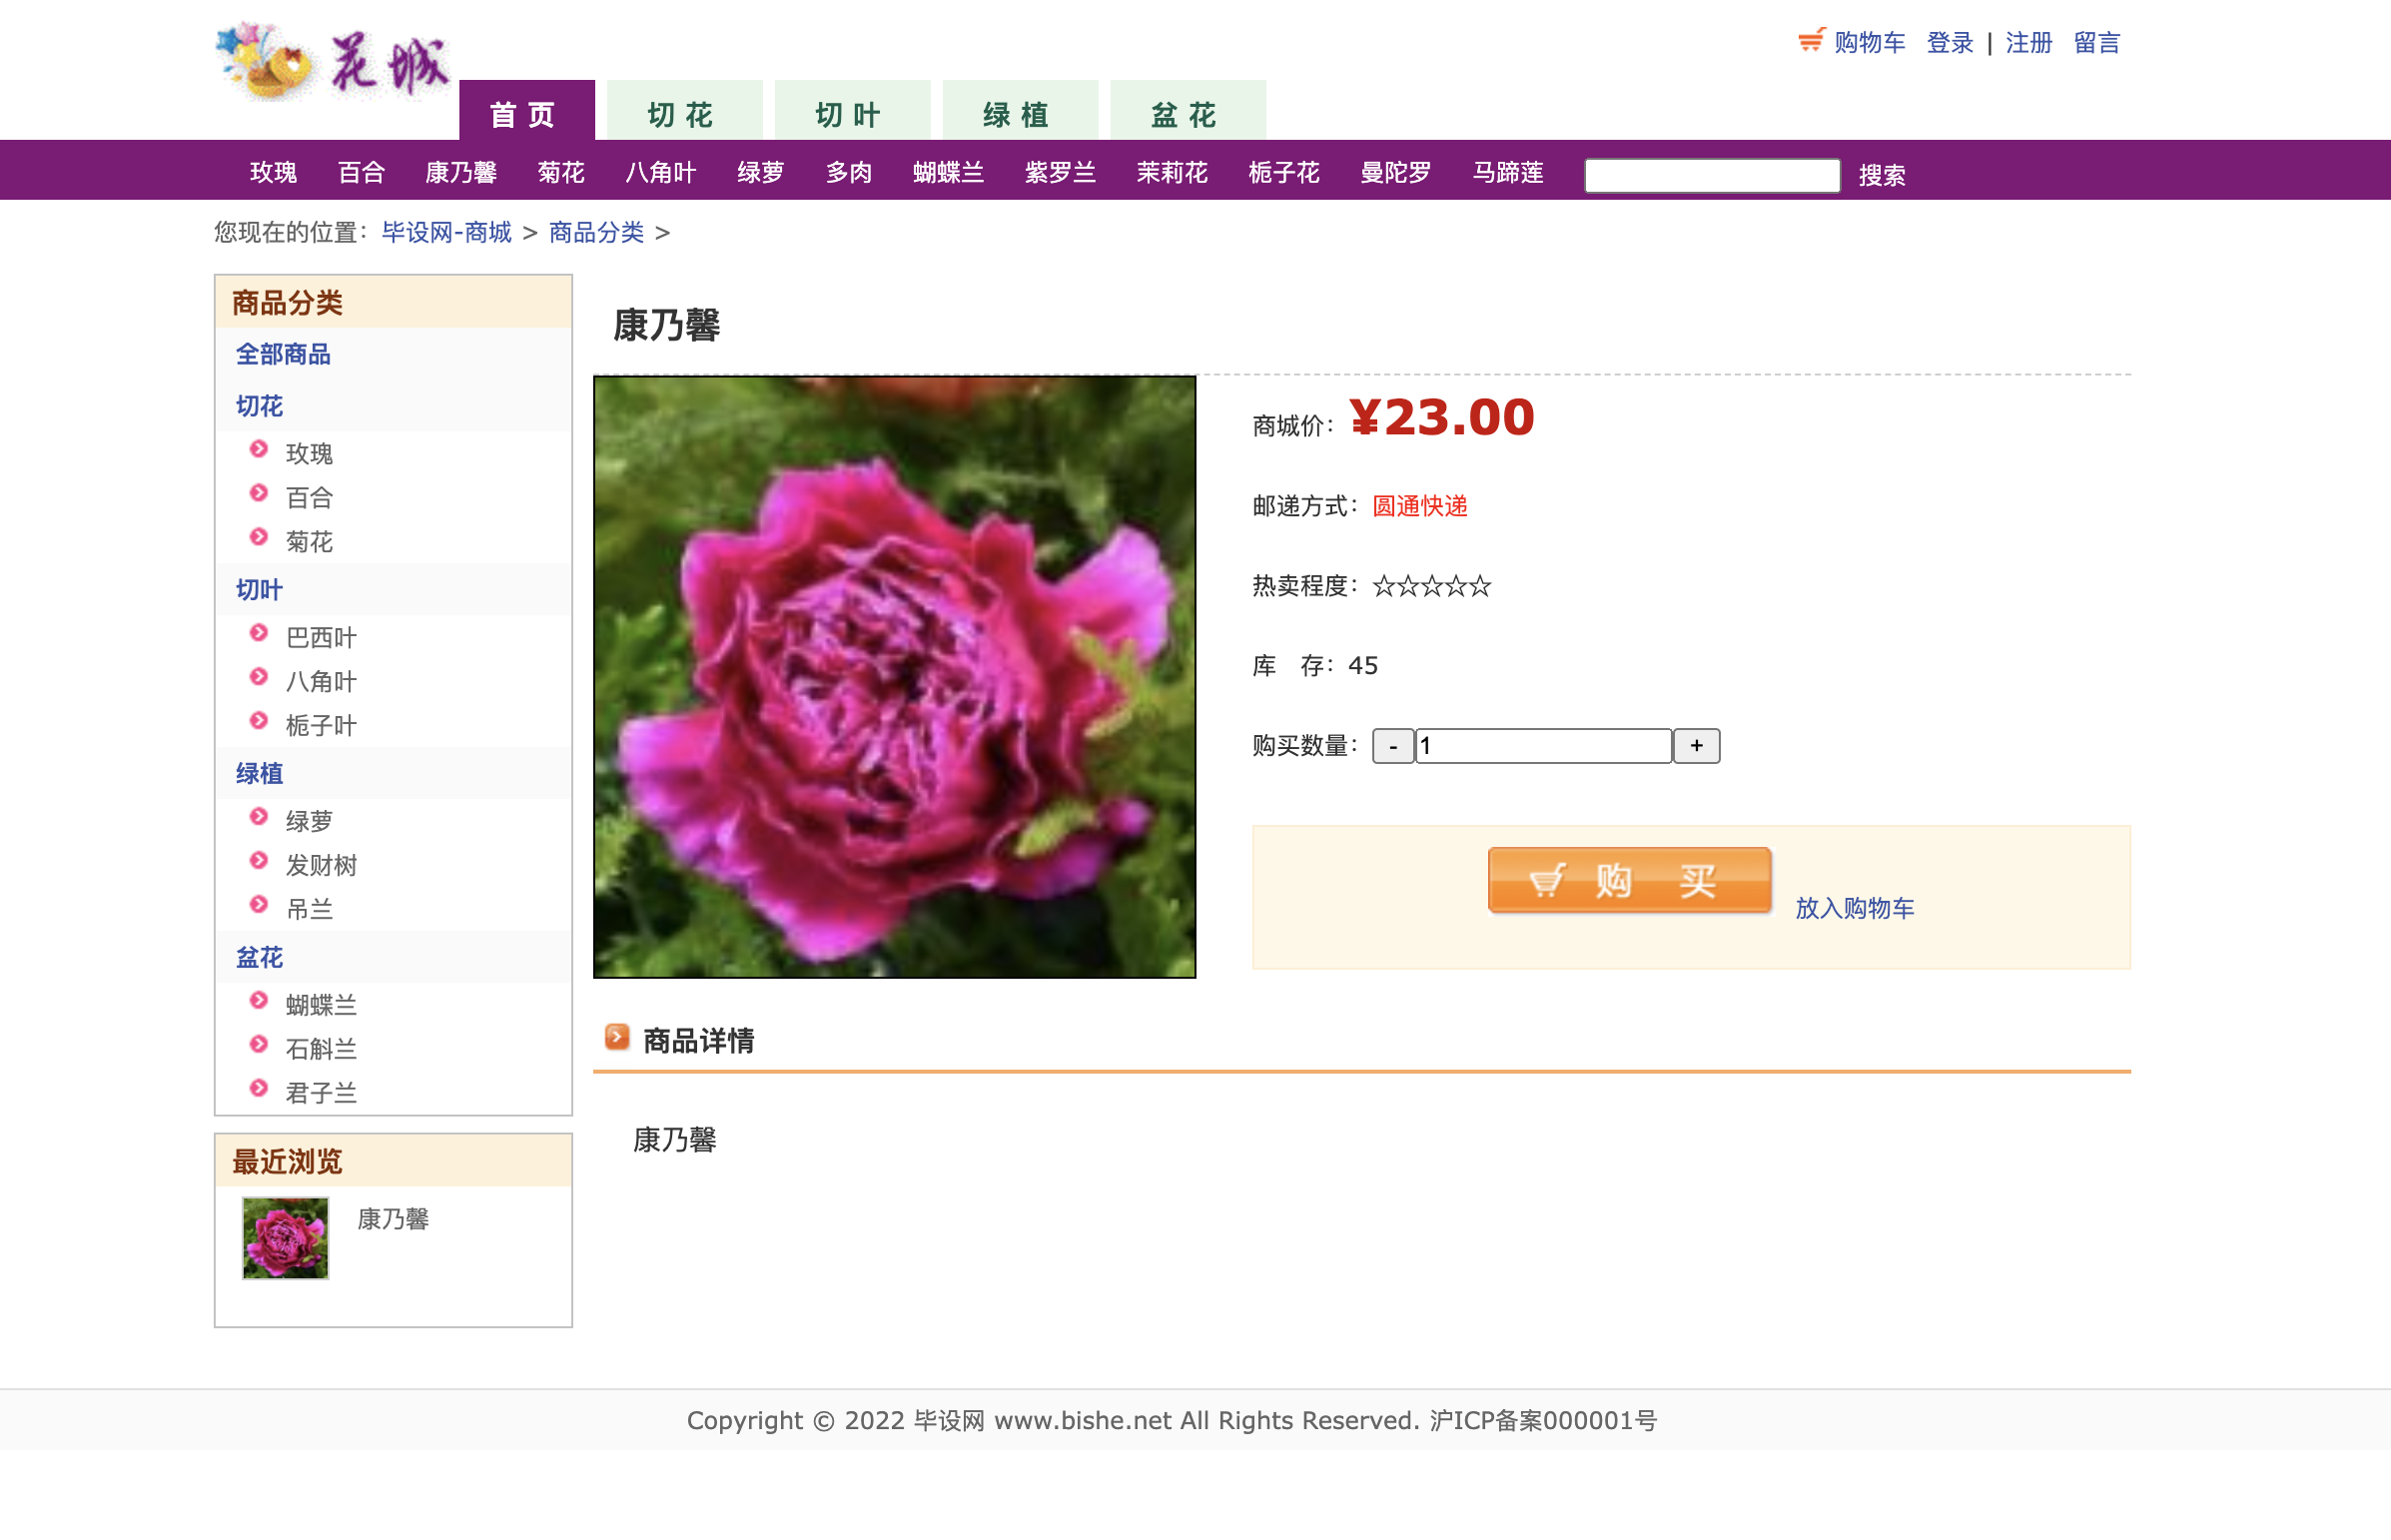 【S020】JSP在线鲜花商城系统 花店销售平台项目源码